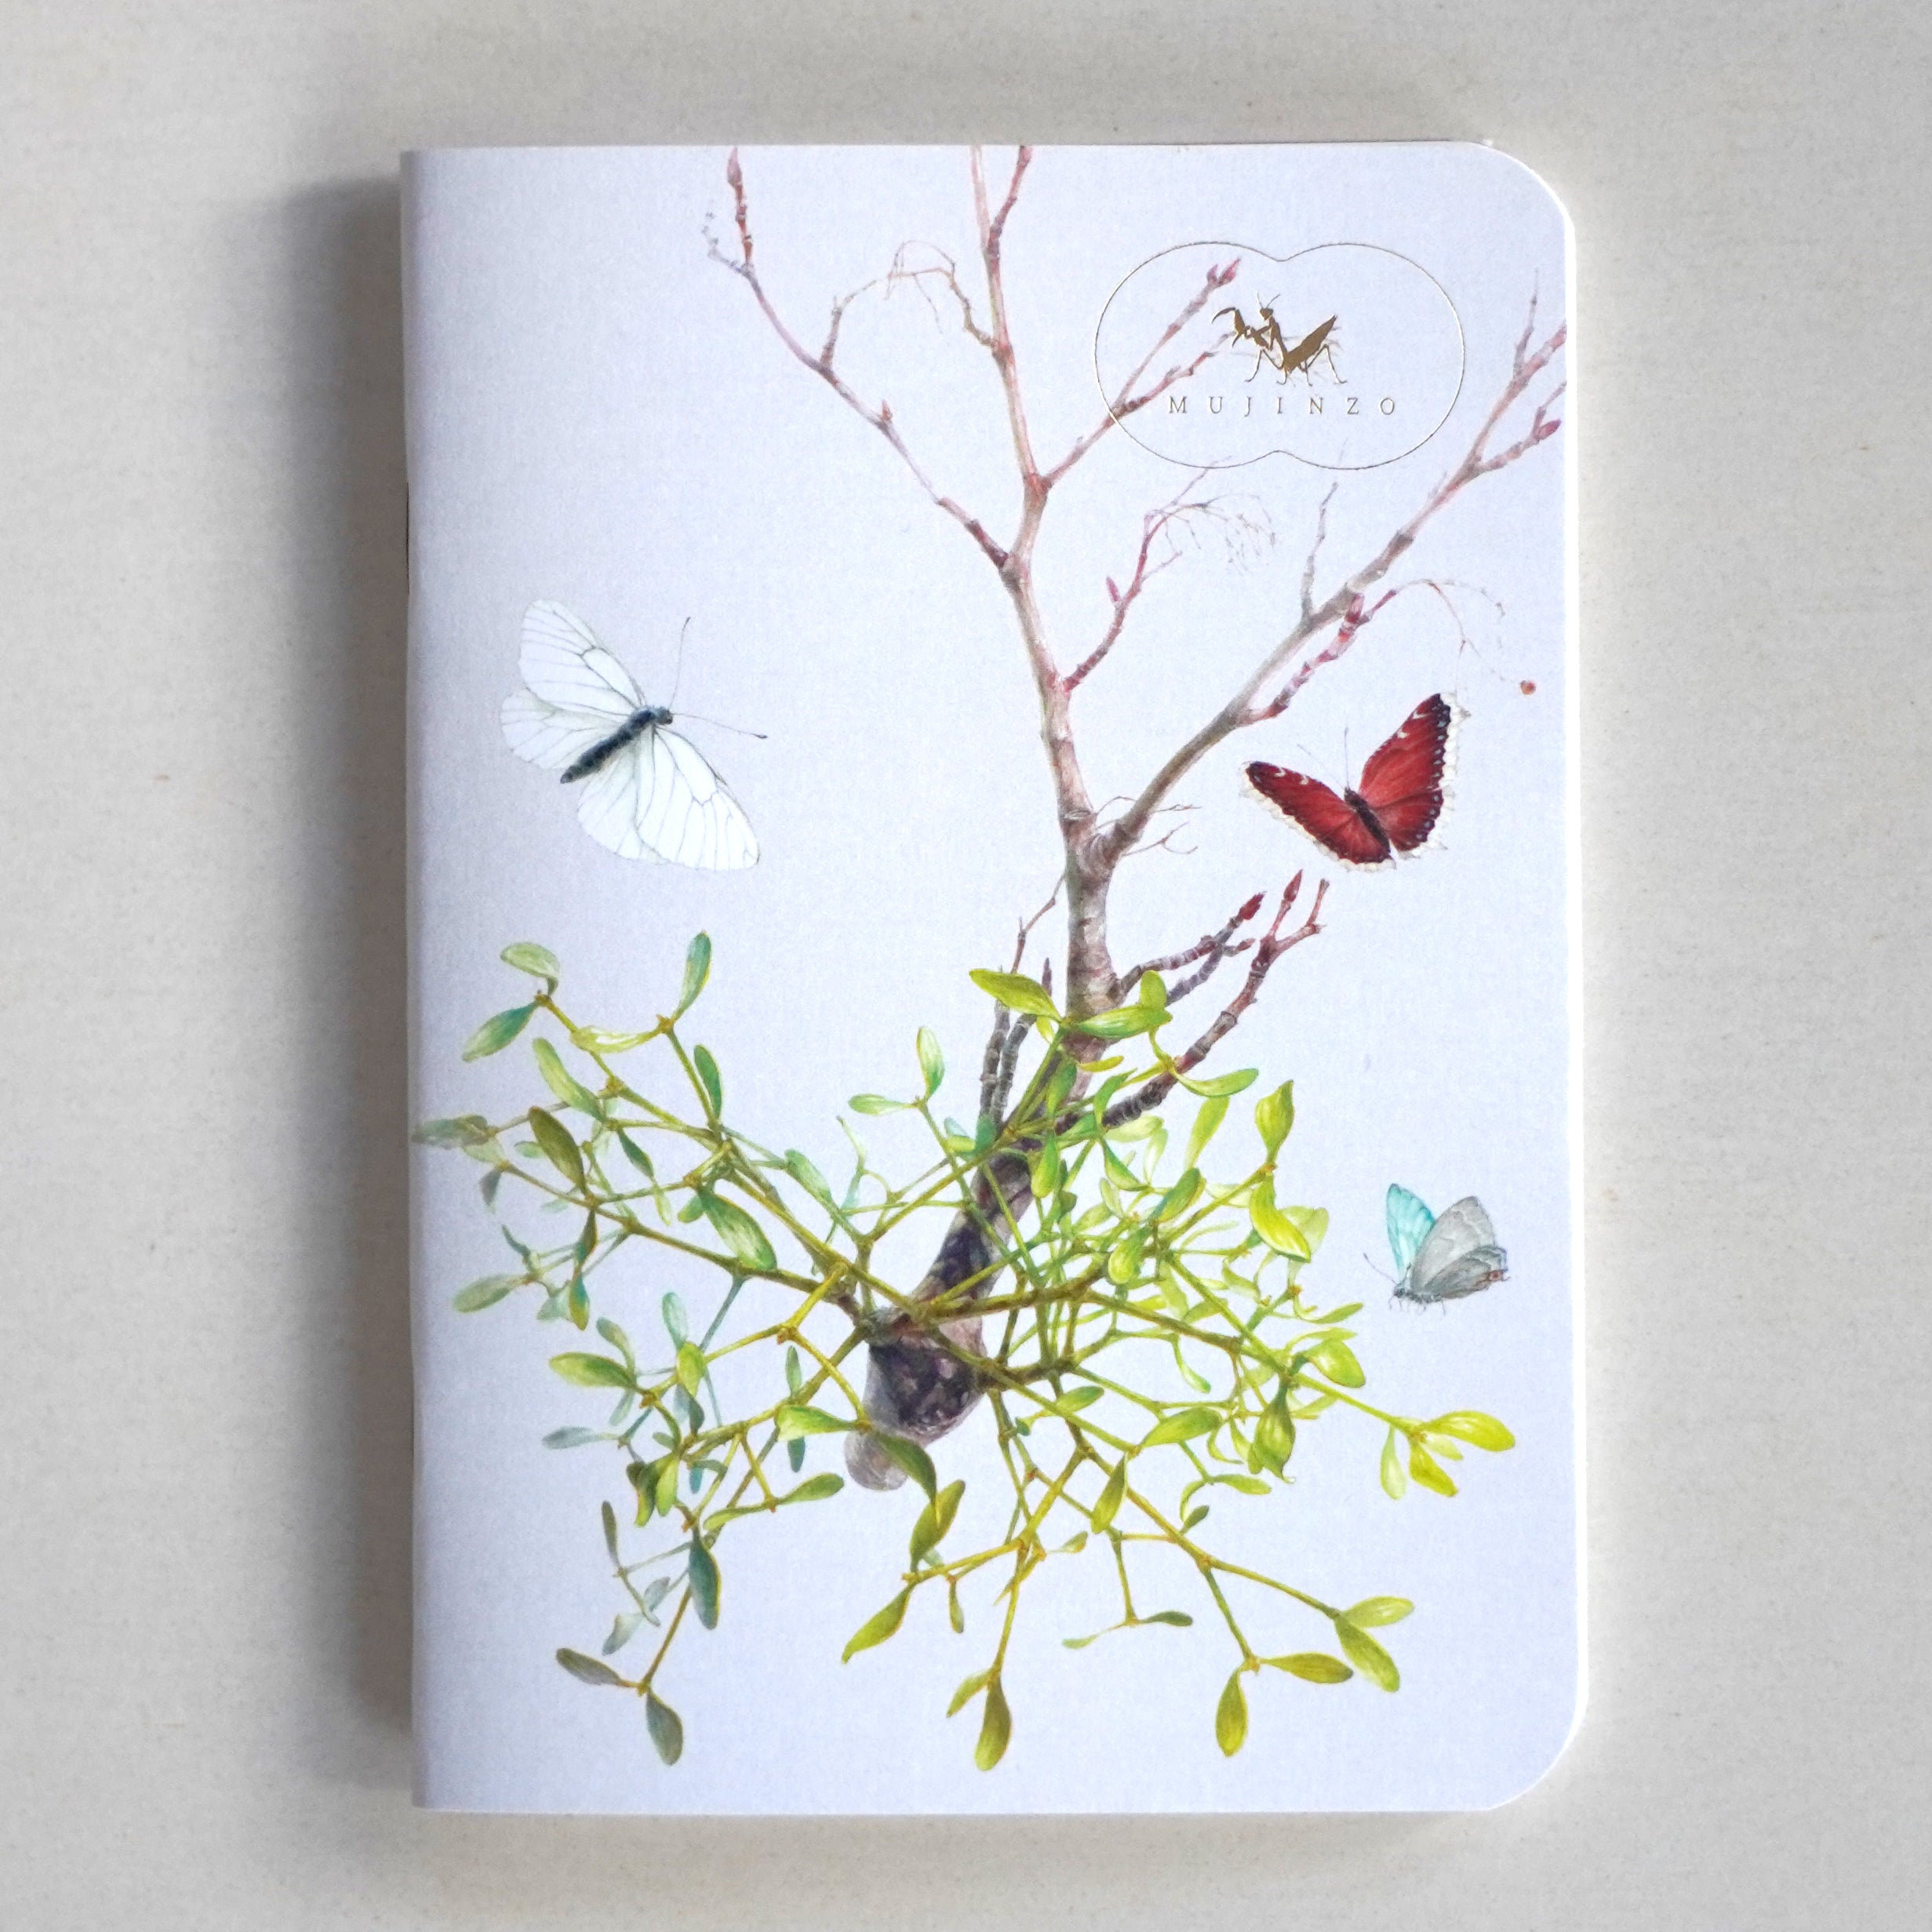 MUJINZO Notebook "Mistletoe"